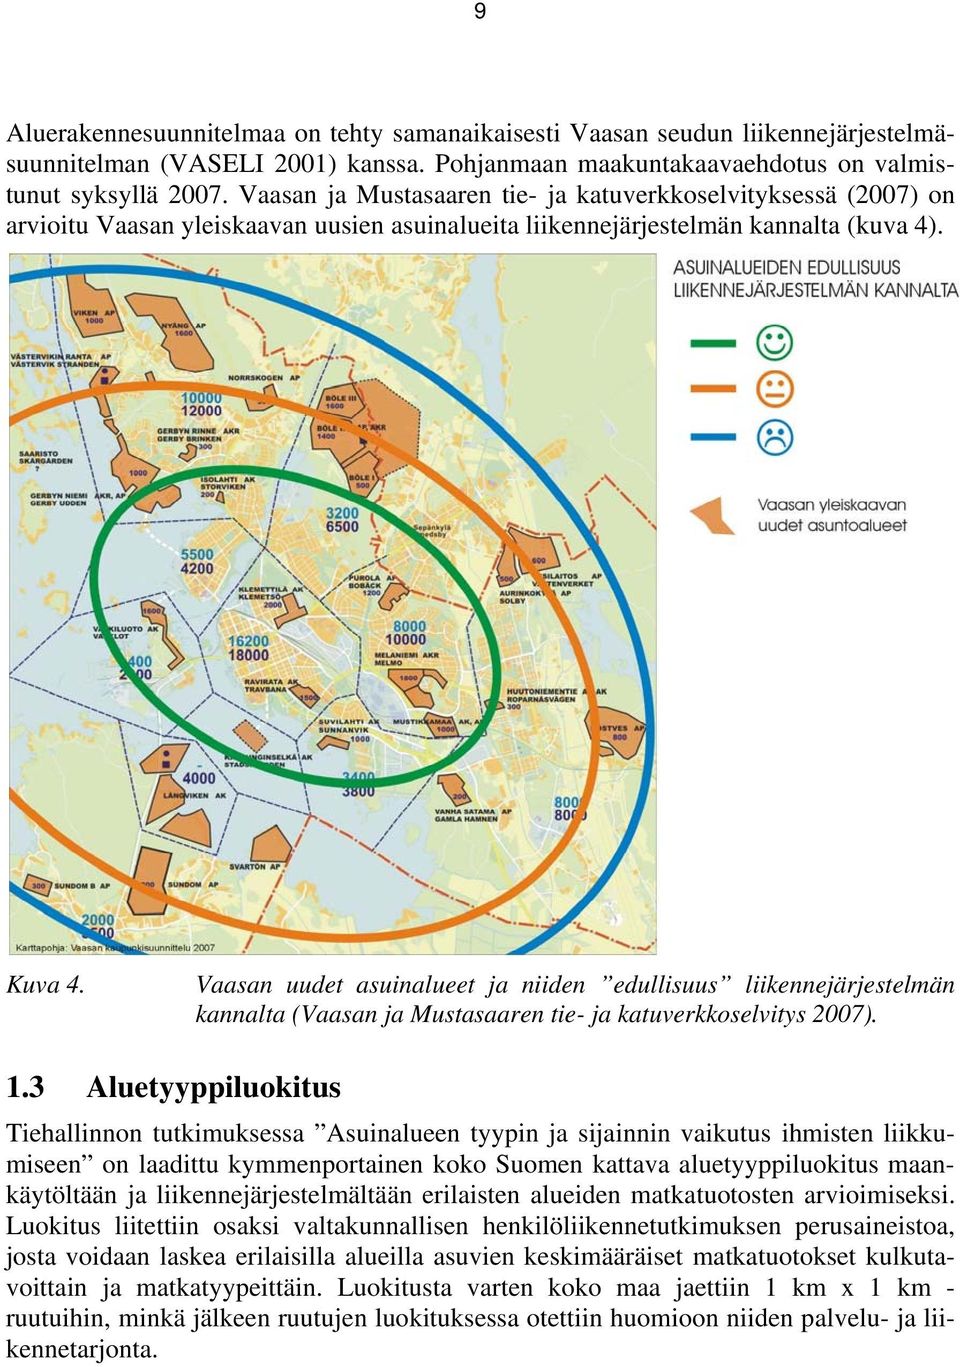 Vaasan uudet asuinalueet ja niiden edullisuus liikennejärjestelmän kannalta (Vaasan ja Mustasaaren tie- ja katuverkkoselvitys 2007). 1.